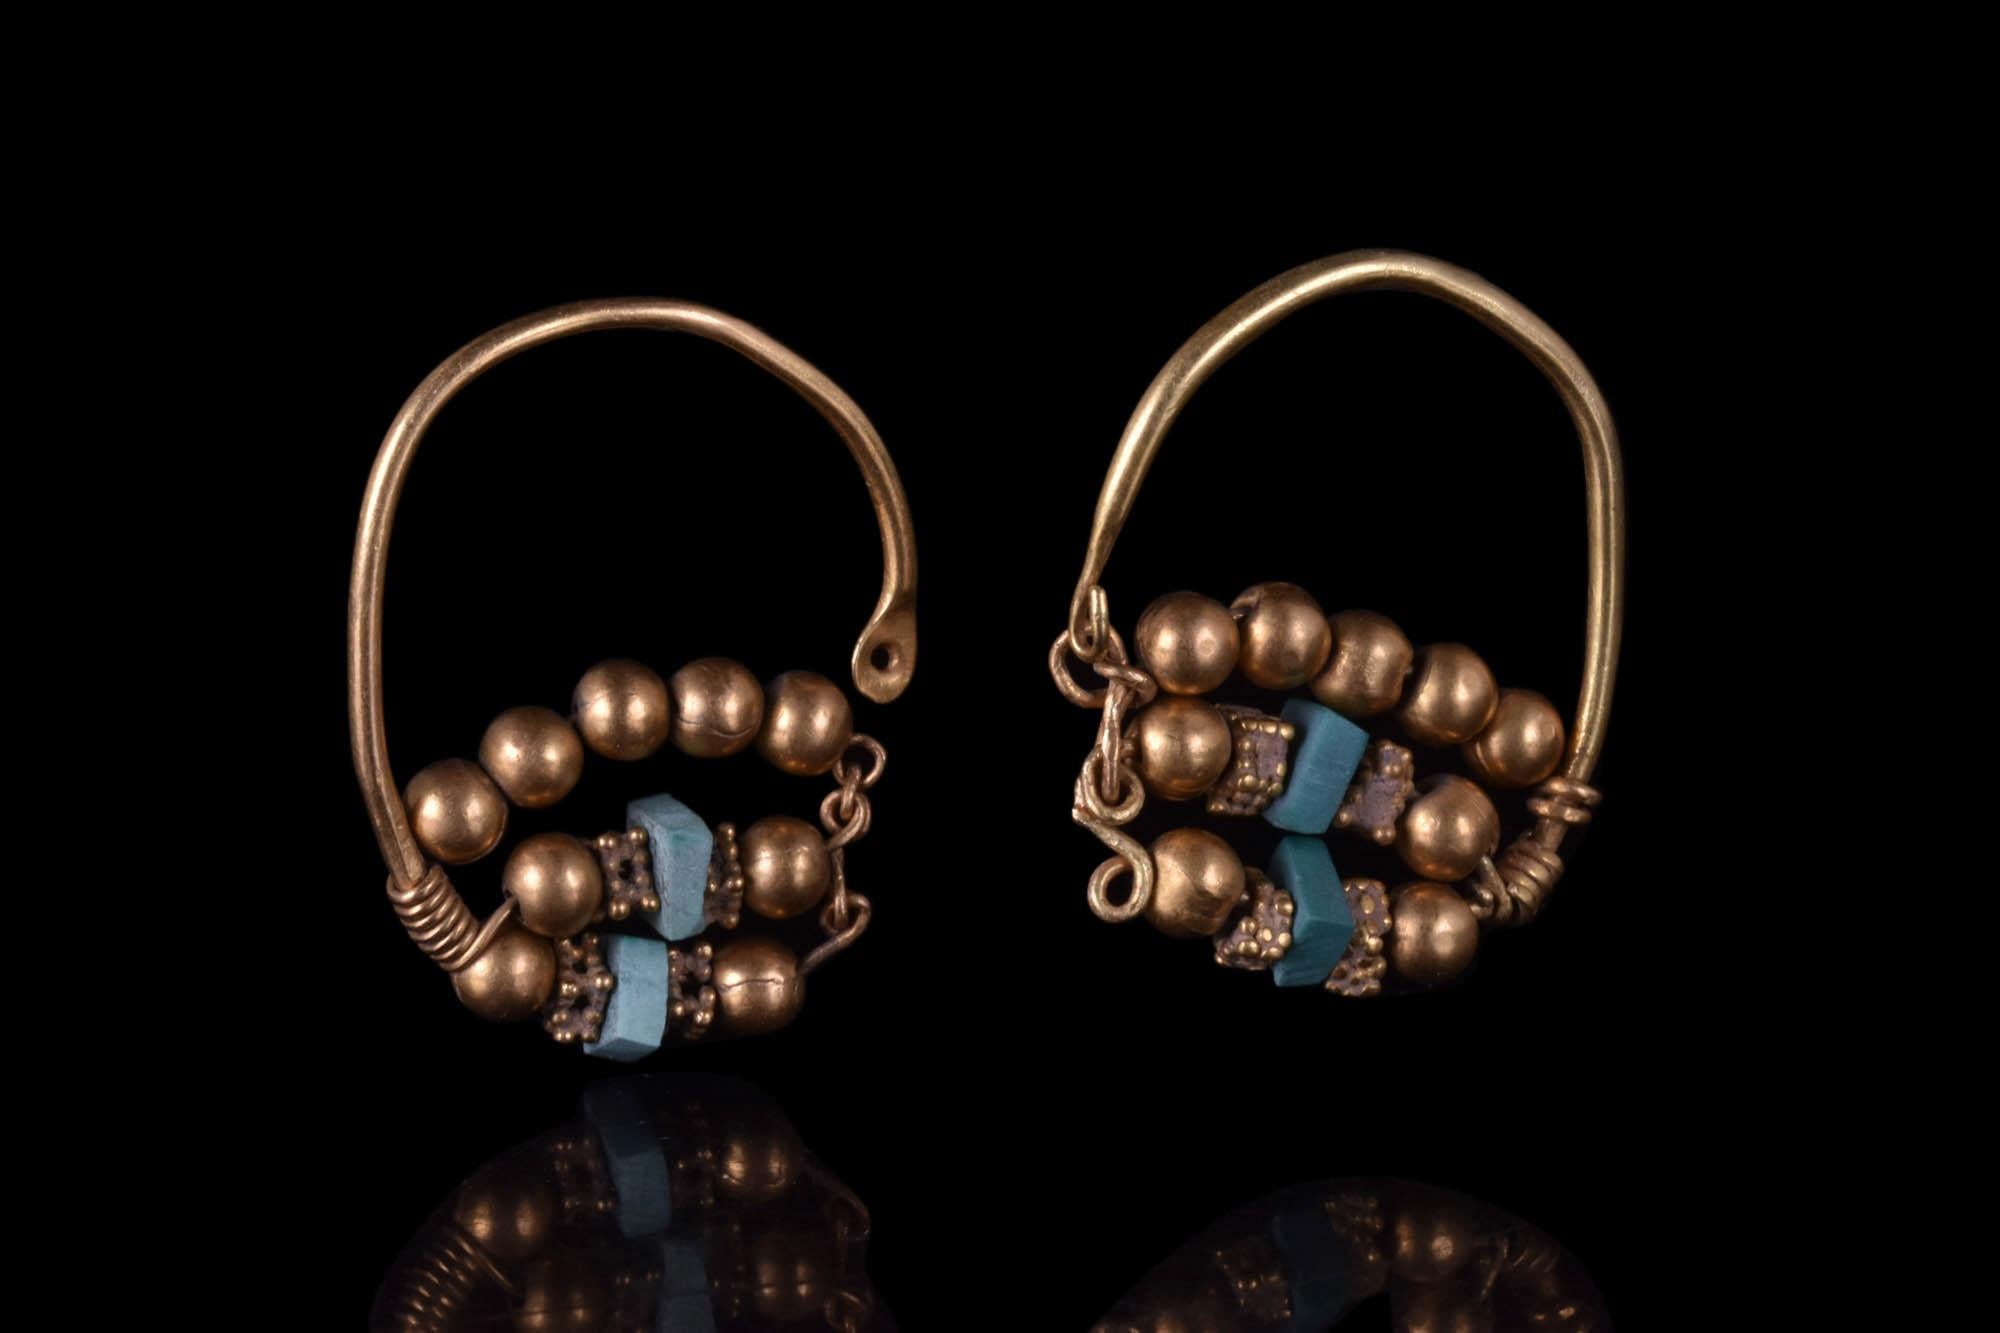 Paire de boucles d'oreilles en or assorties, chacune composée d'un anneau allongé en fil de fer culminant avec un cabochon de turquoise en forme de larme. La moitié inférieure de la boucle est décorée de trois rangées de boules d'or, et les